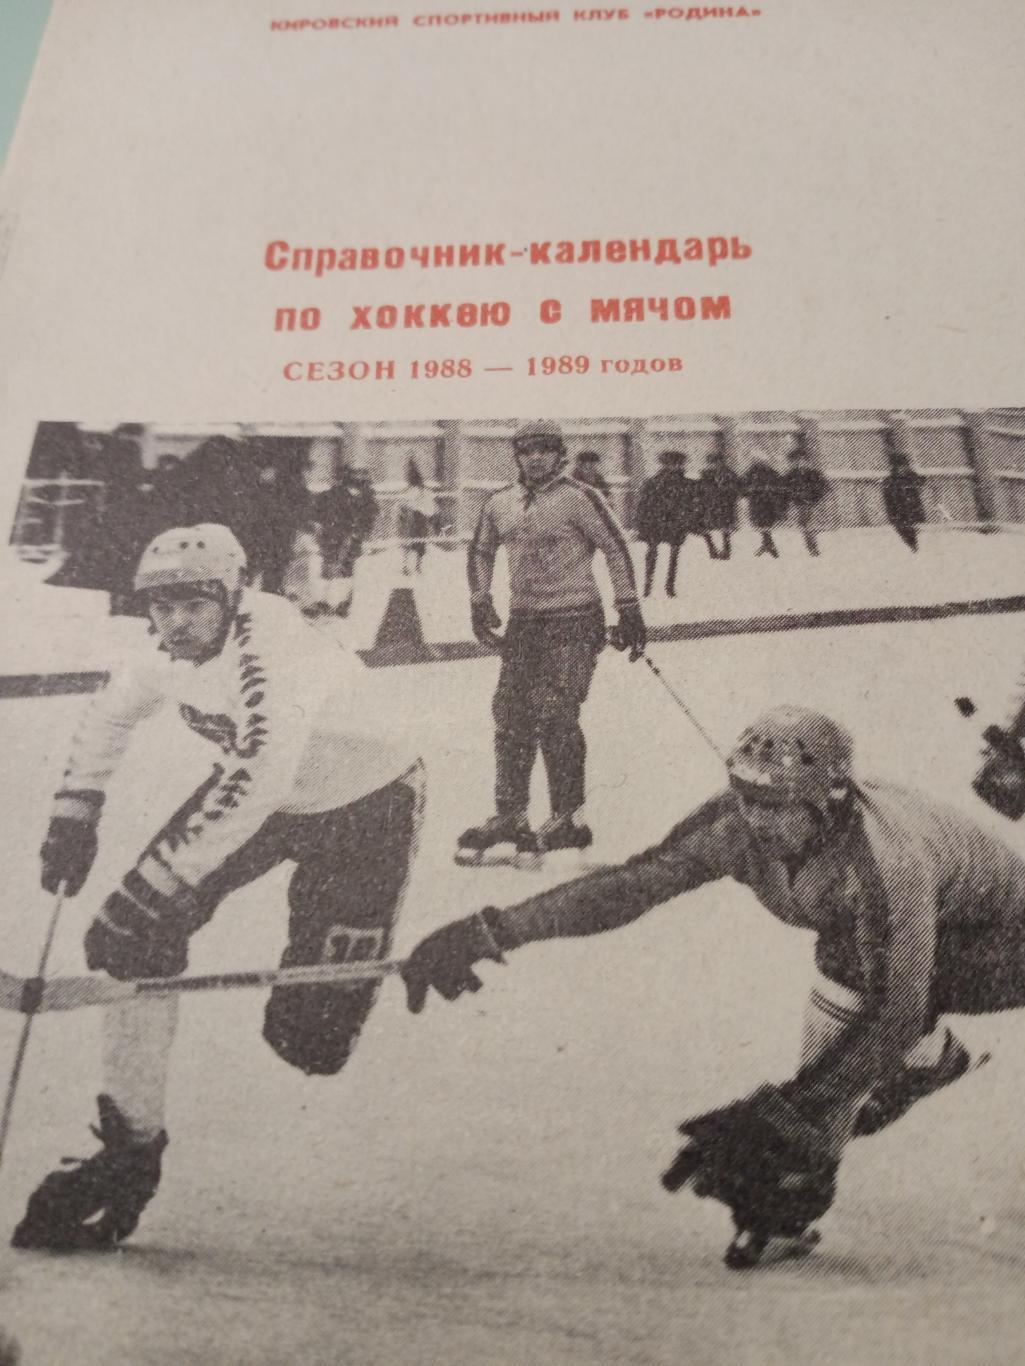 Хоккей с мячом. Киров - 1988/89